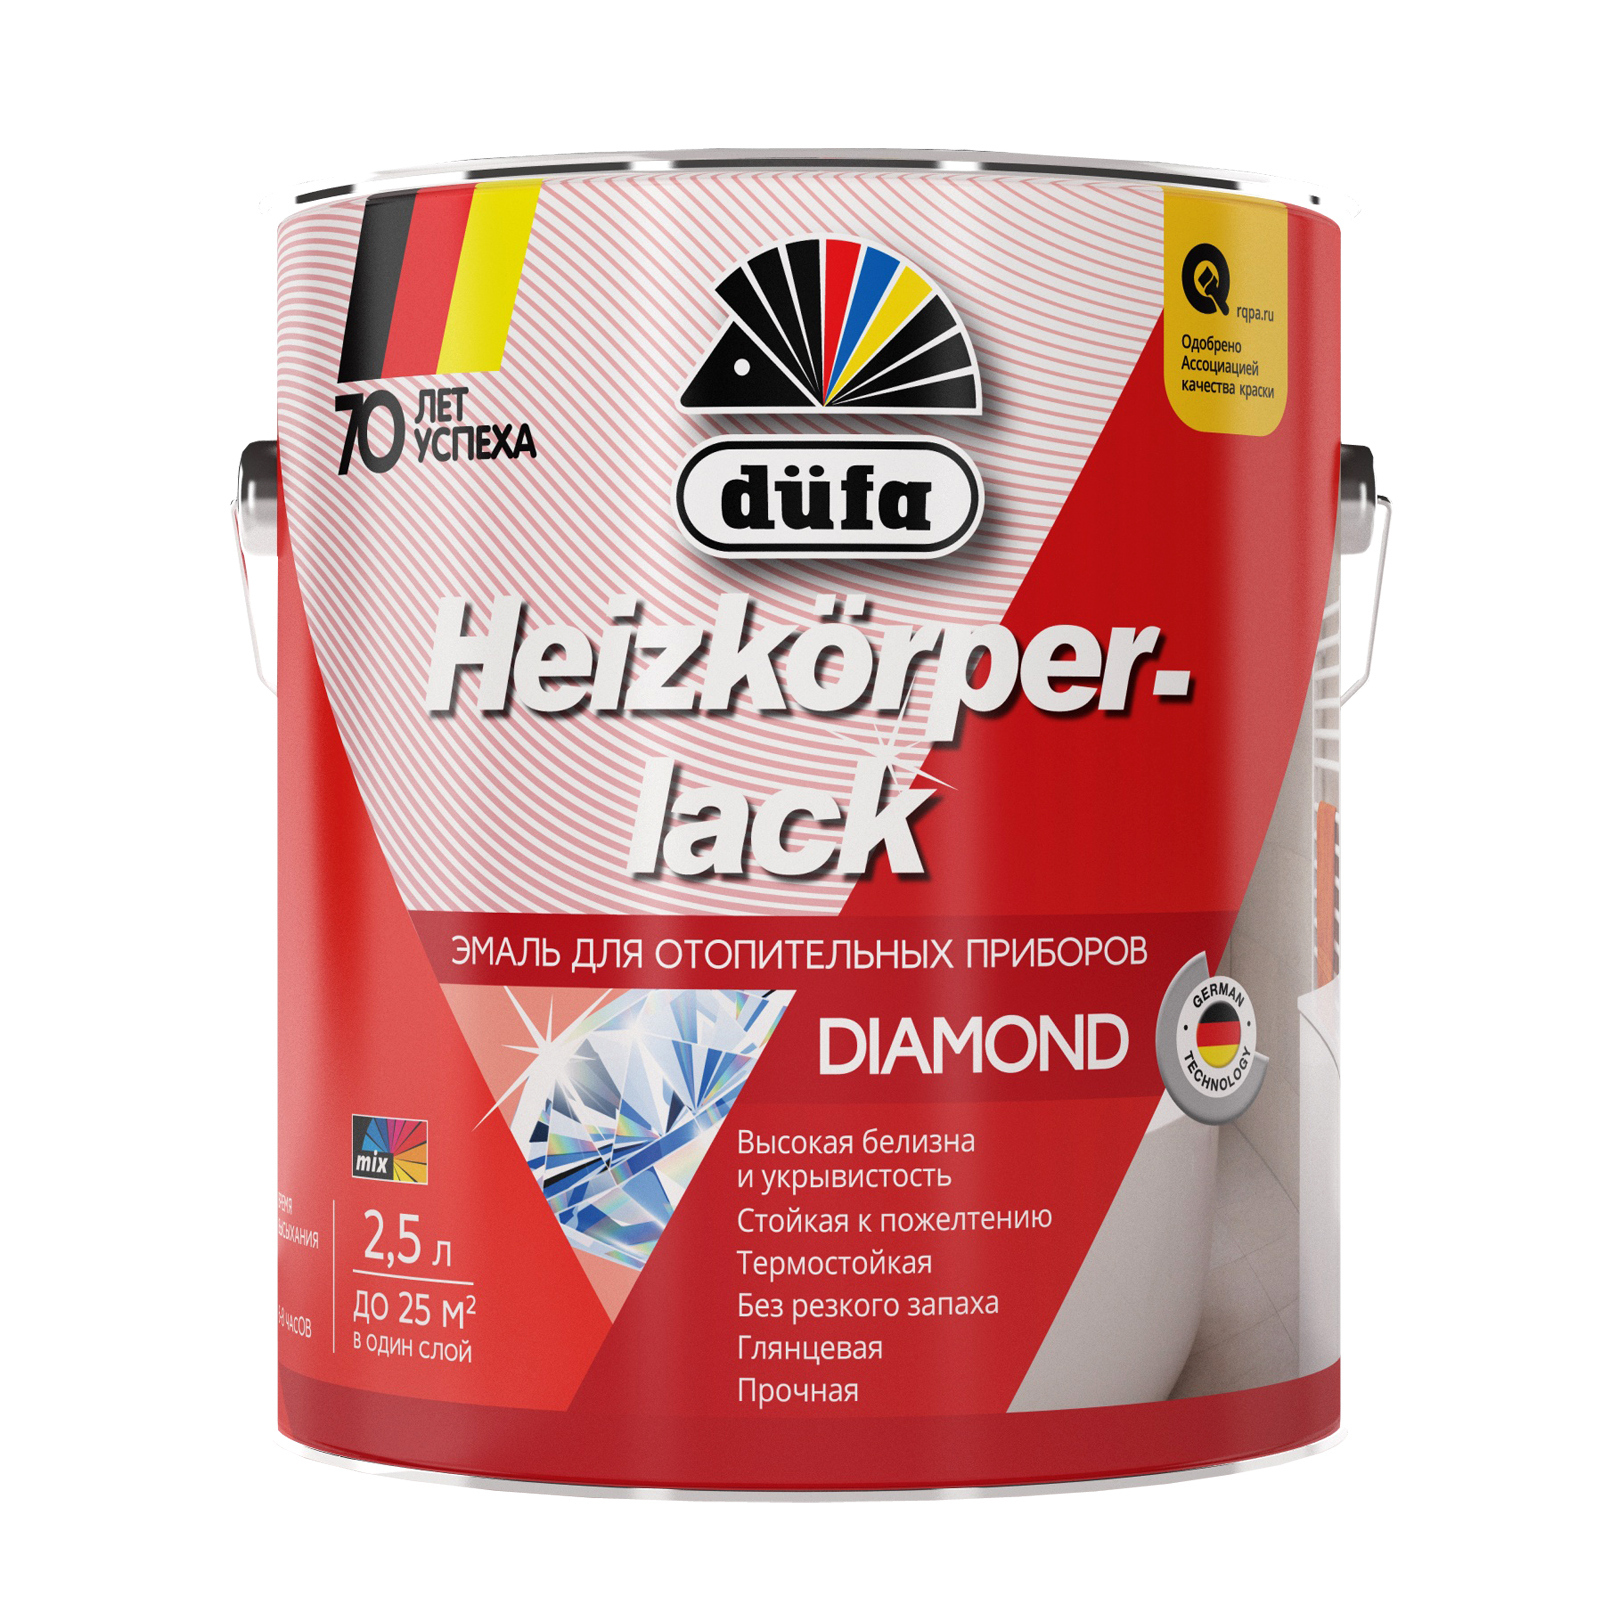 Эмаль для радиаторов Dufa Heizkorperlack глянцевая белая 2,5 л. эмаль для радиаторов pelligrina pearl pp 075 акриловая полуглянцевая белая 2 8 кг